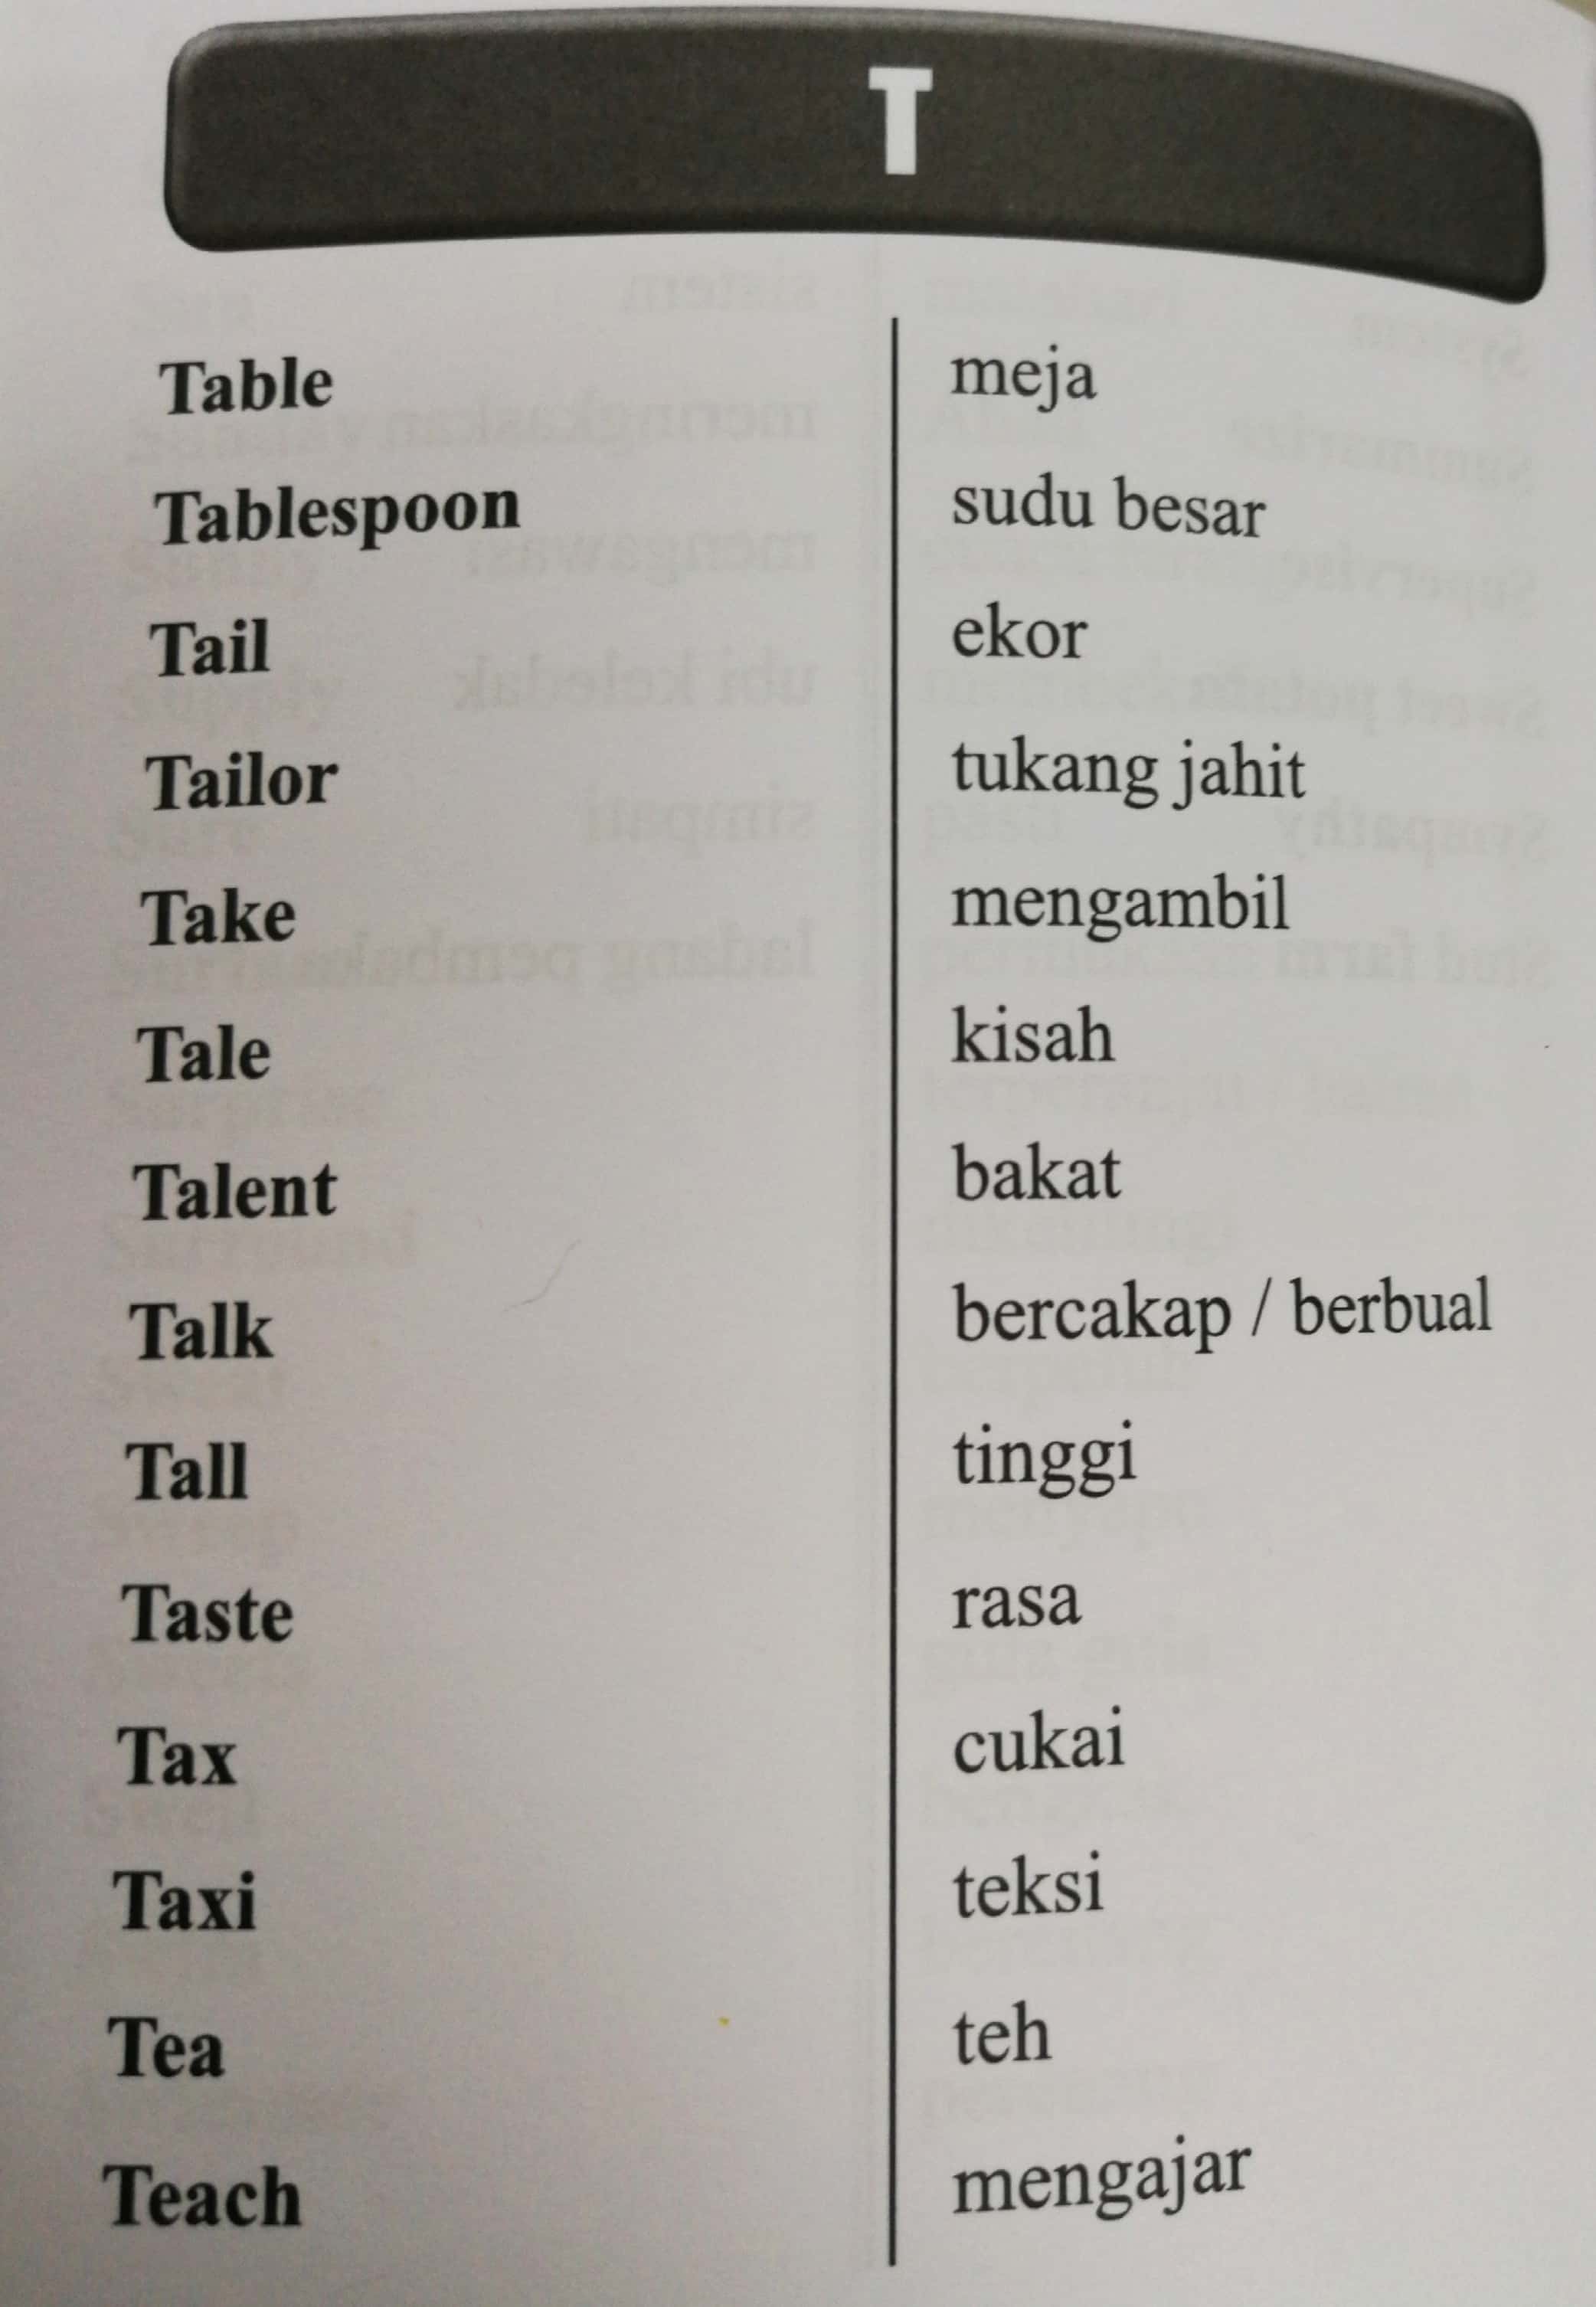 Belajar Bahasa Melayu Dalam Bahasa Inggeris Carolinarosgarza